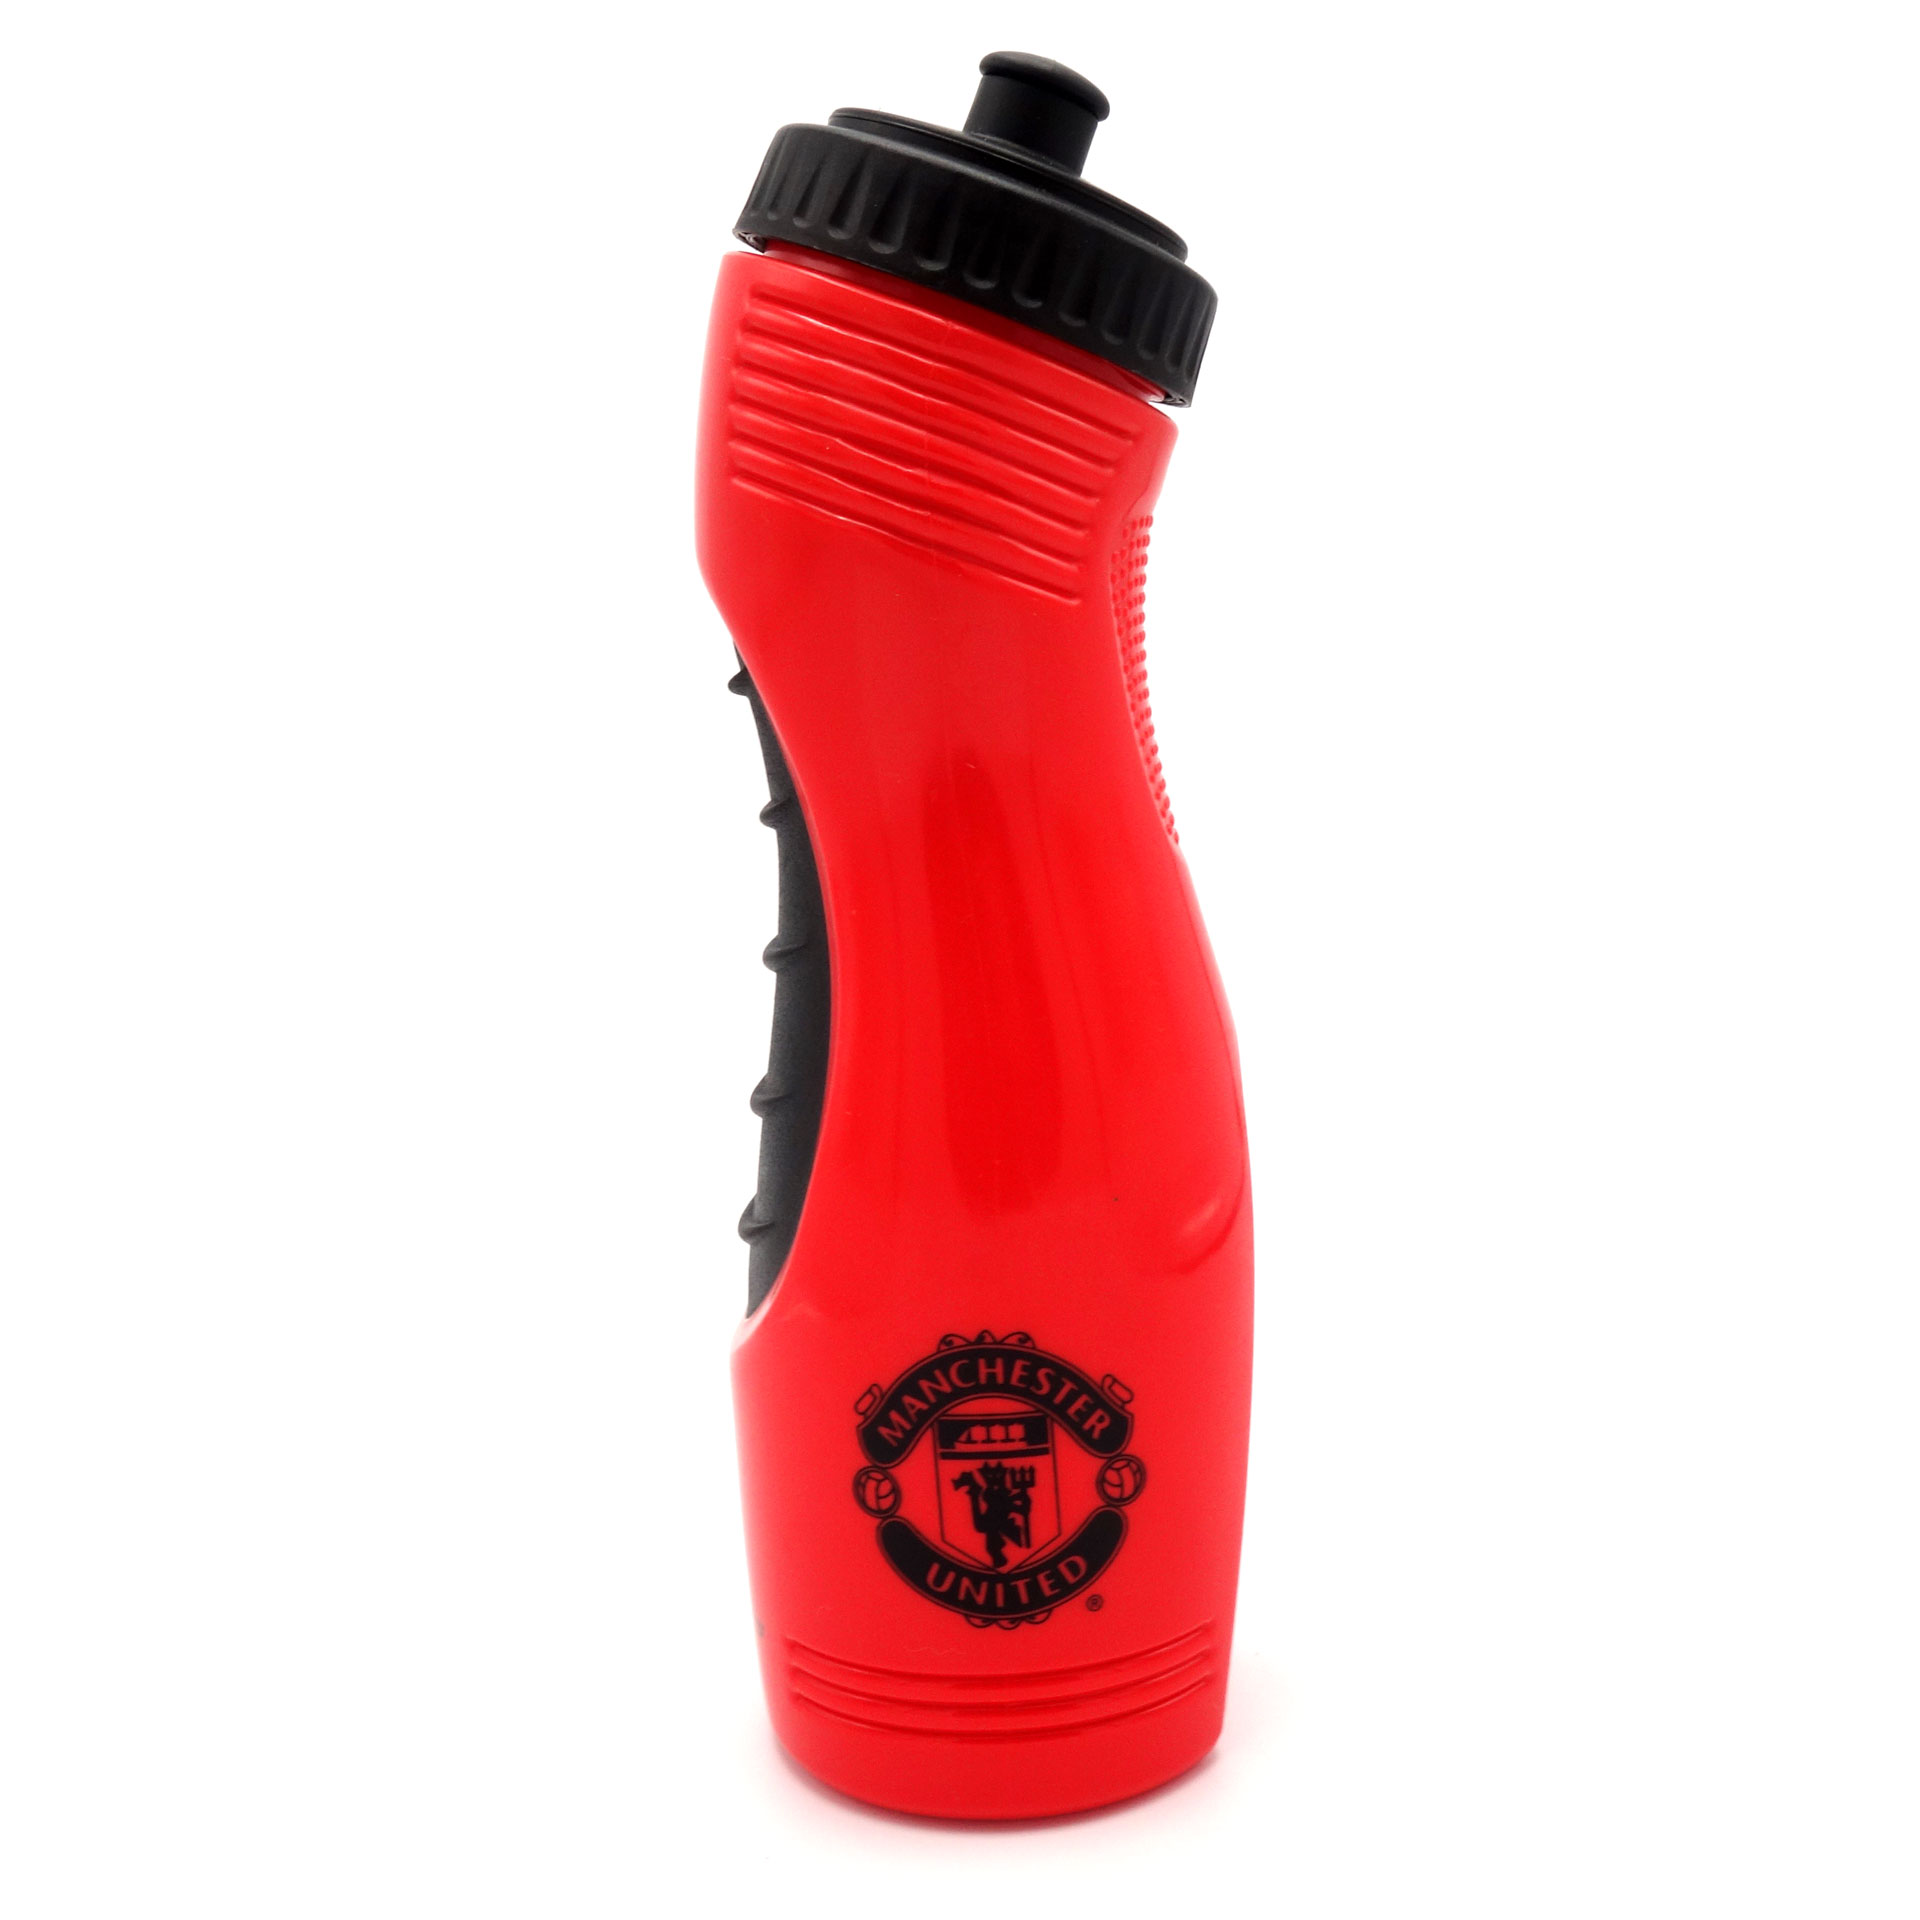 Manchester United Trinkflasche 